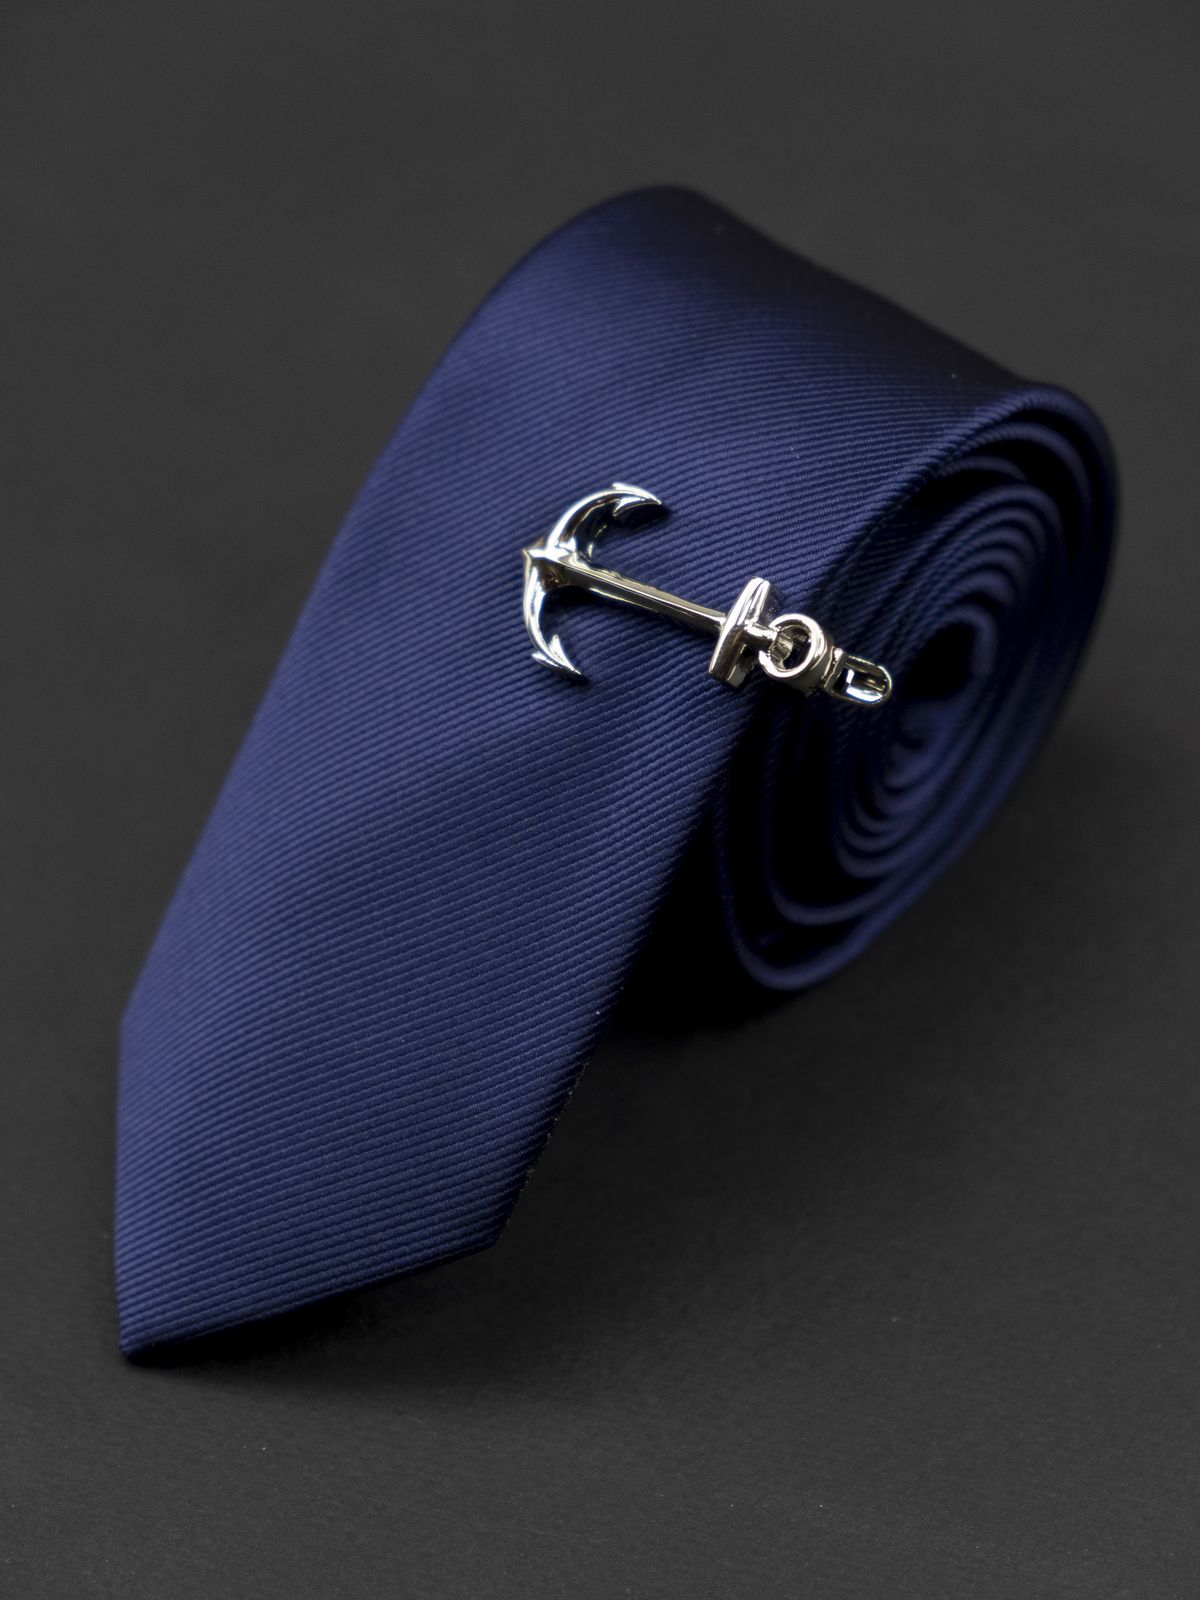 Зажим для галстука серебряный якорь купить. Состав: Ювелирная сталь 316L, Цвет: Стальной, Габариты: 2 см. х 4 см., Вес: 8 гр.; 